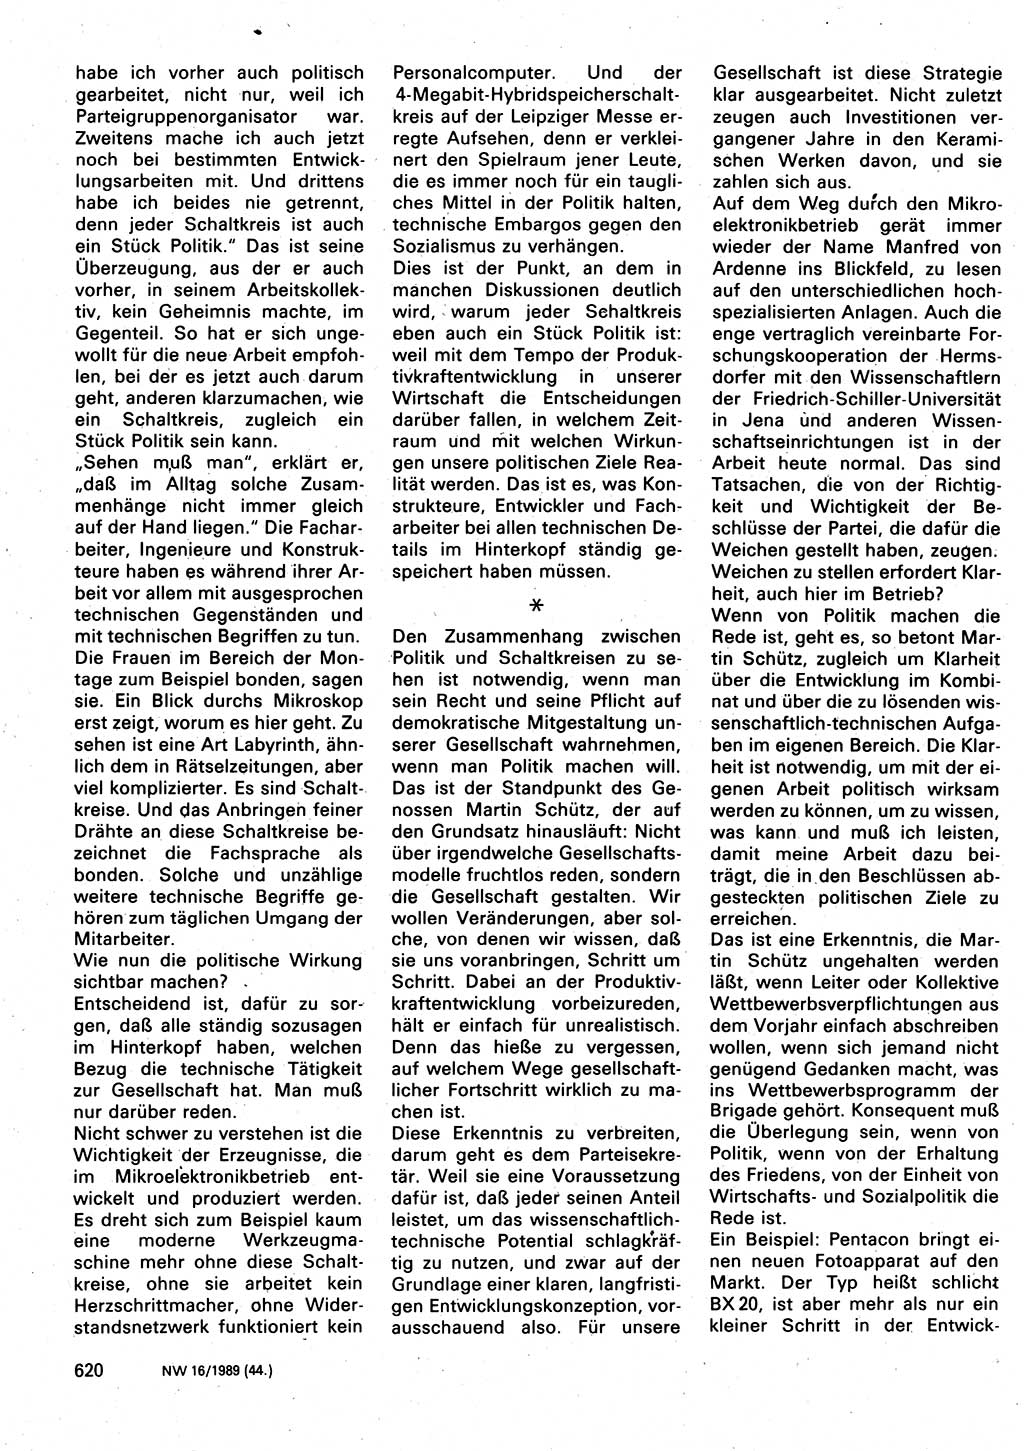 Neuer Weg (NW), Organ des Zentralkomitees (ZK) der SED (Sozialistische Einheitspartei Deutschlands) für Fragen des Parteilebens, 44. Jahrgang [Deutsche Demokratische Republik (DDR)] 1989, Seite 620 (NW ZK SED DDR 1989, S. 620)